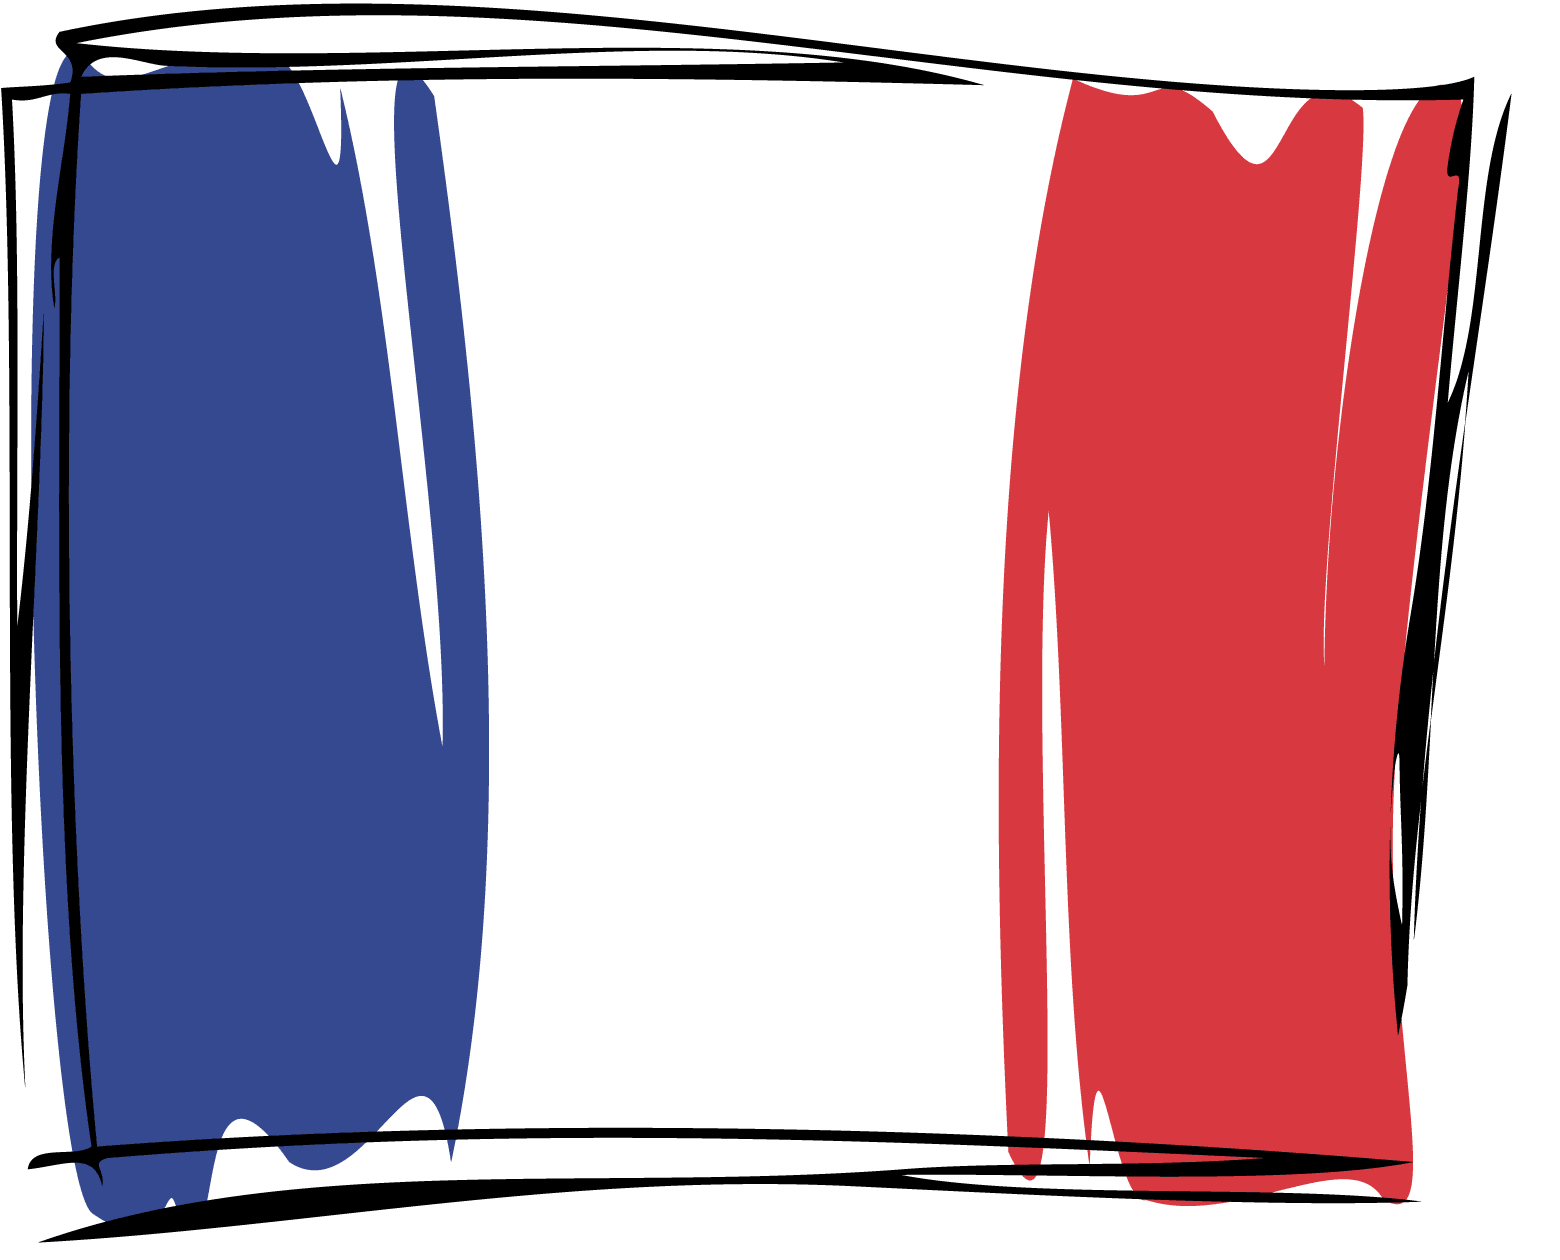 France icons u0026middot; Fra